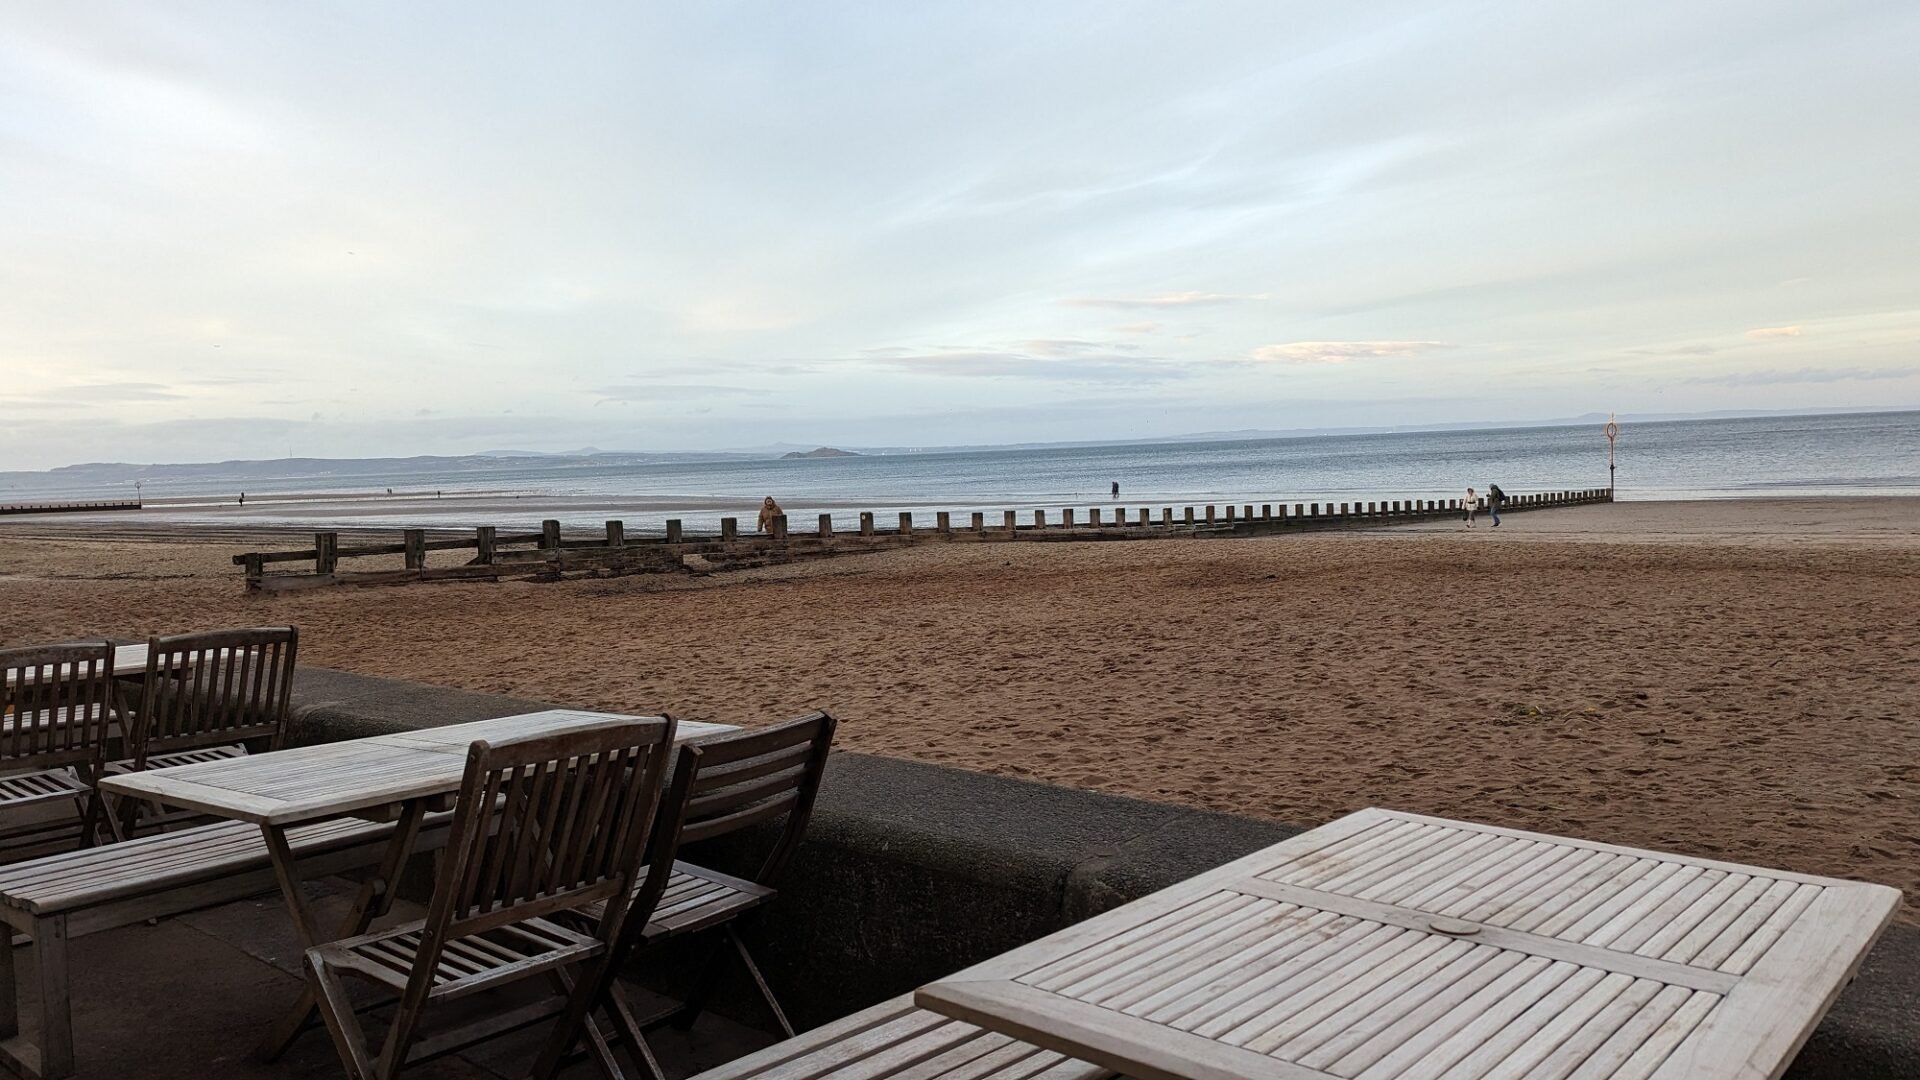 Beach House cafe tables overlooking Portobello sandy beach and sea as backdrop